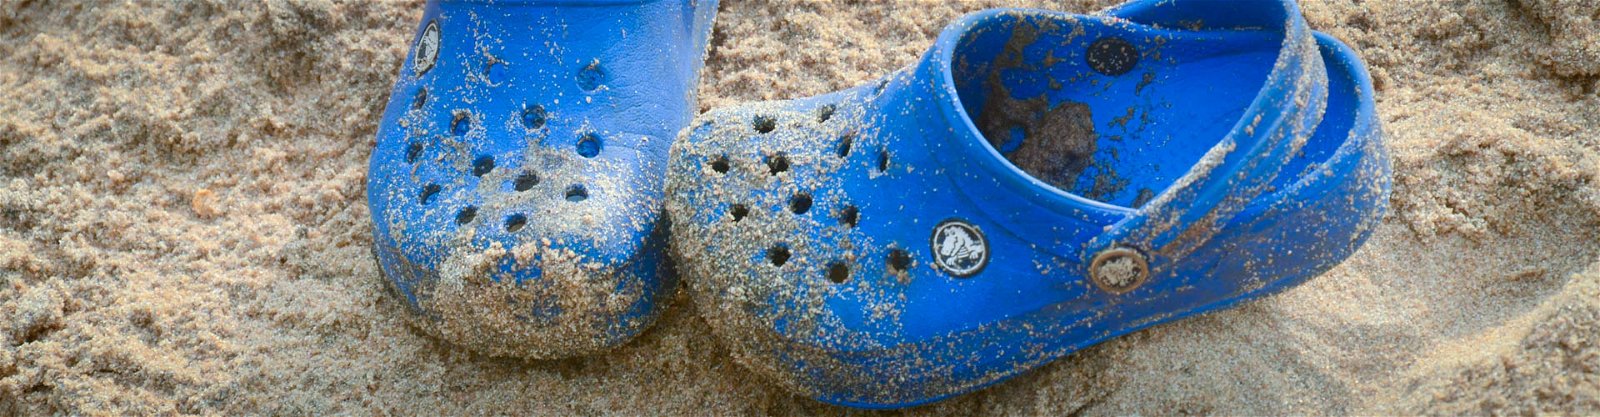 G Bering strædet plantageejer Crocs i flere farver - den perfekte lejrsko | Spejder Sport